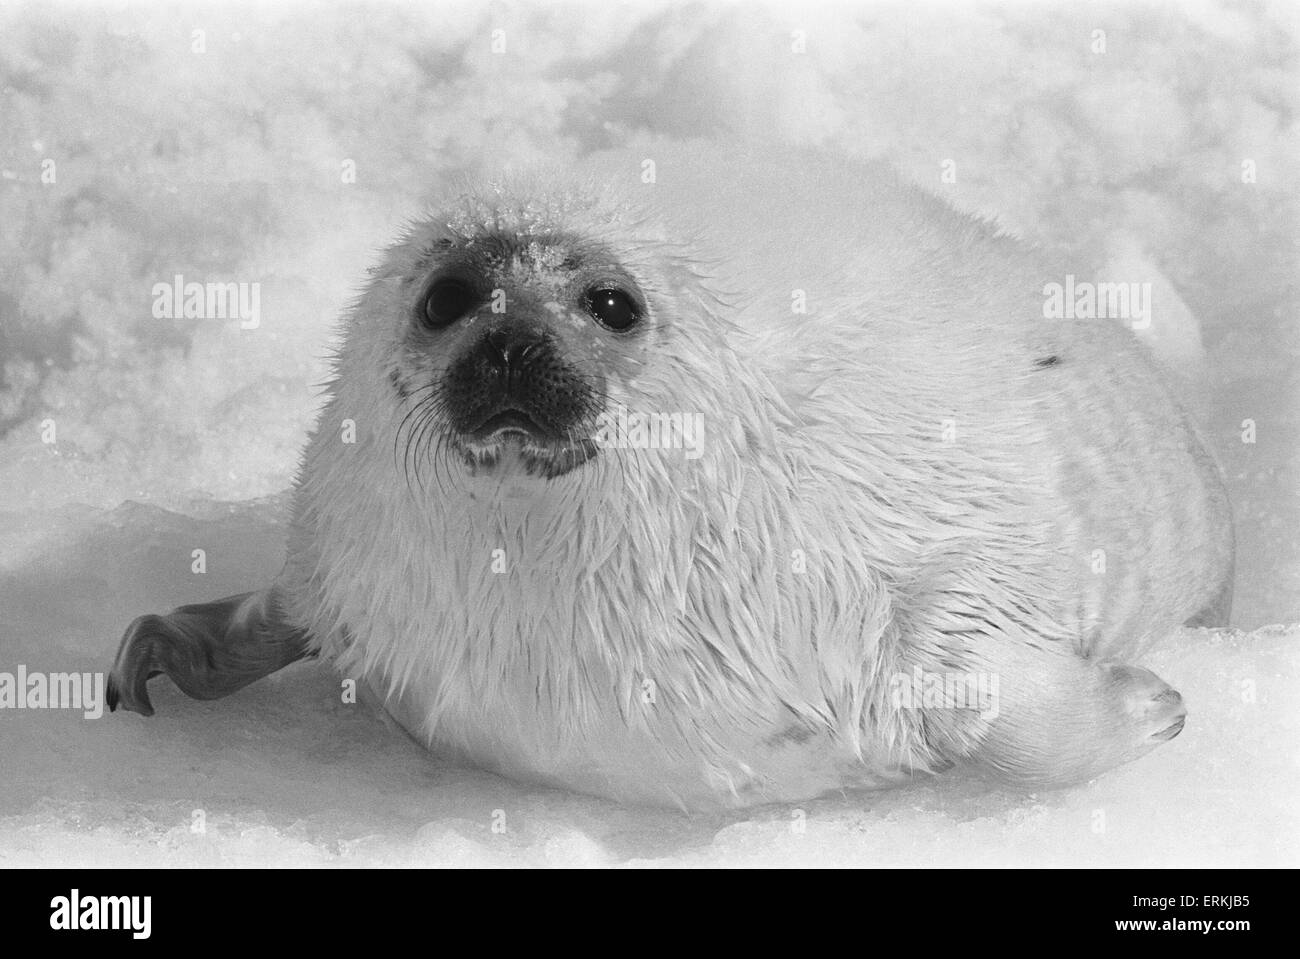 L'abattage des bébés phoques pour leur fourrure. Golfe du Saint-Laurent. Archipel arctique canadien. Mars 1968. La chasse aux phoques au Canada. Banque D'Images